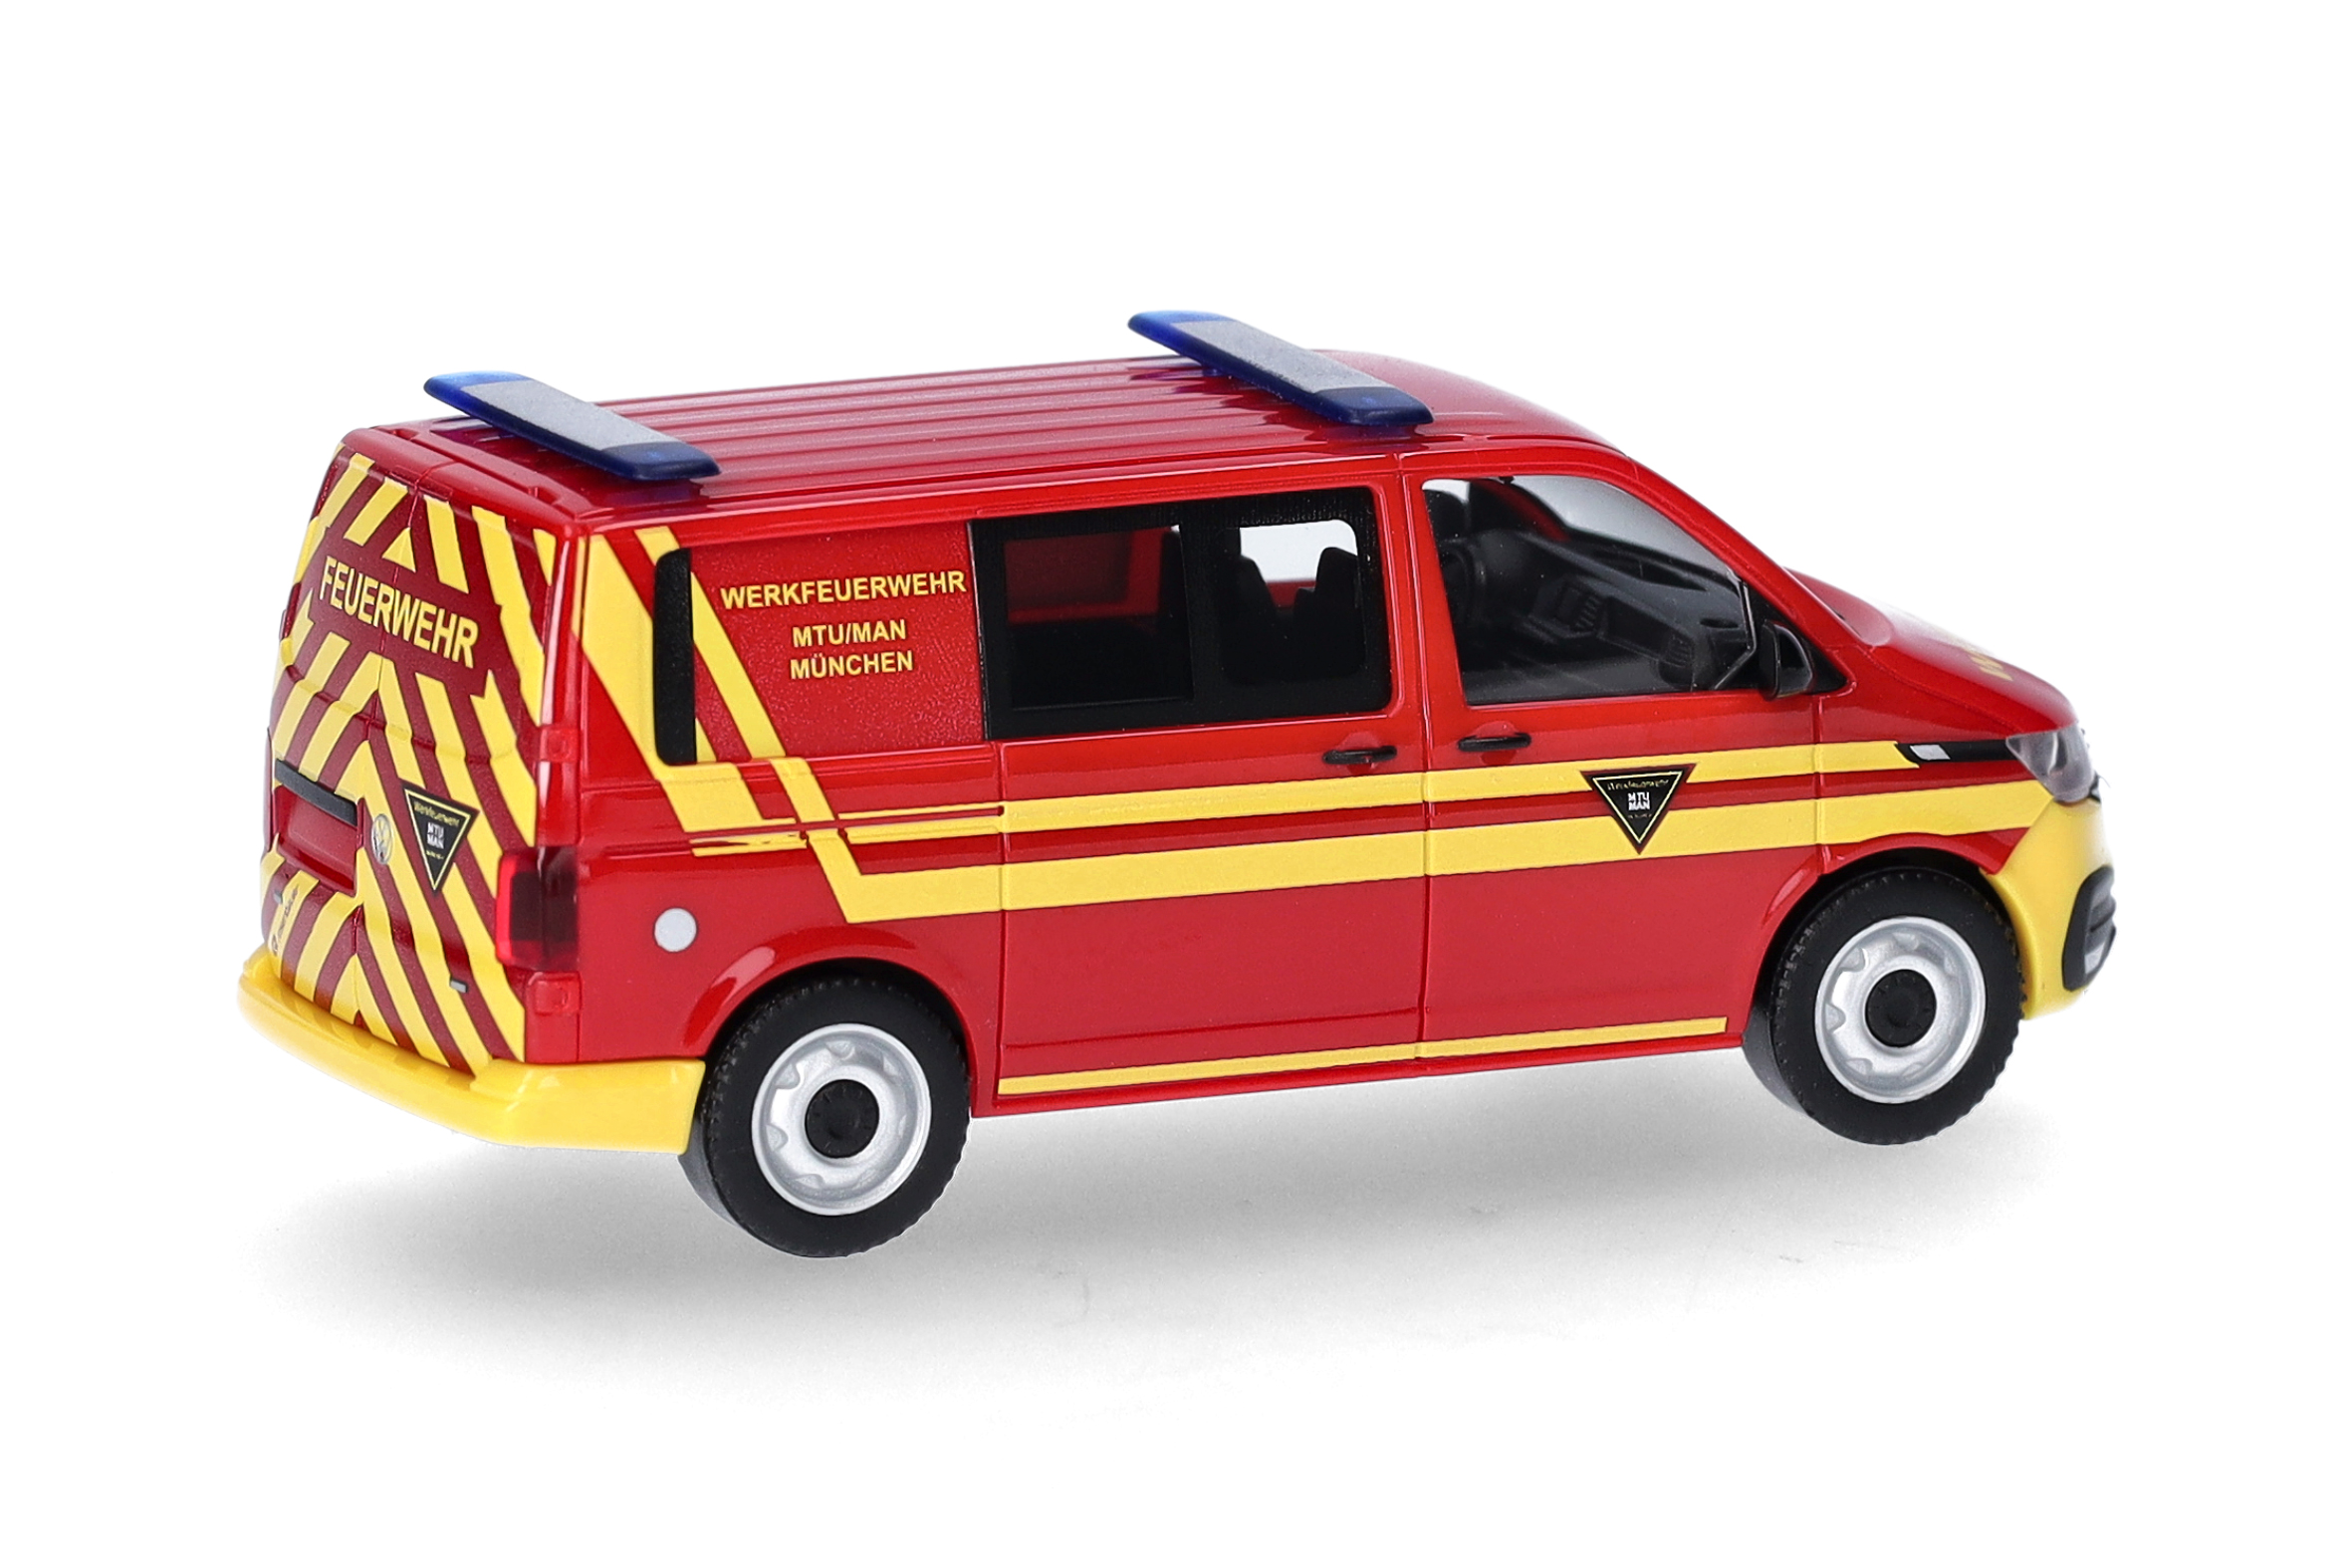 Volkswagen (VW) T6.1 half bus, fire brigade "Feuerwehr MTU/MAN München" (Bavaria/Munich)